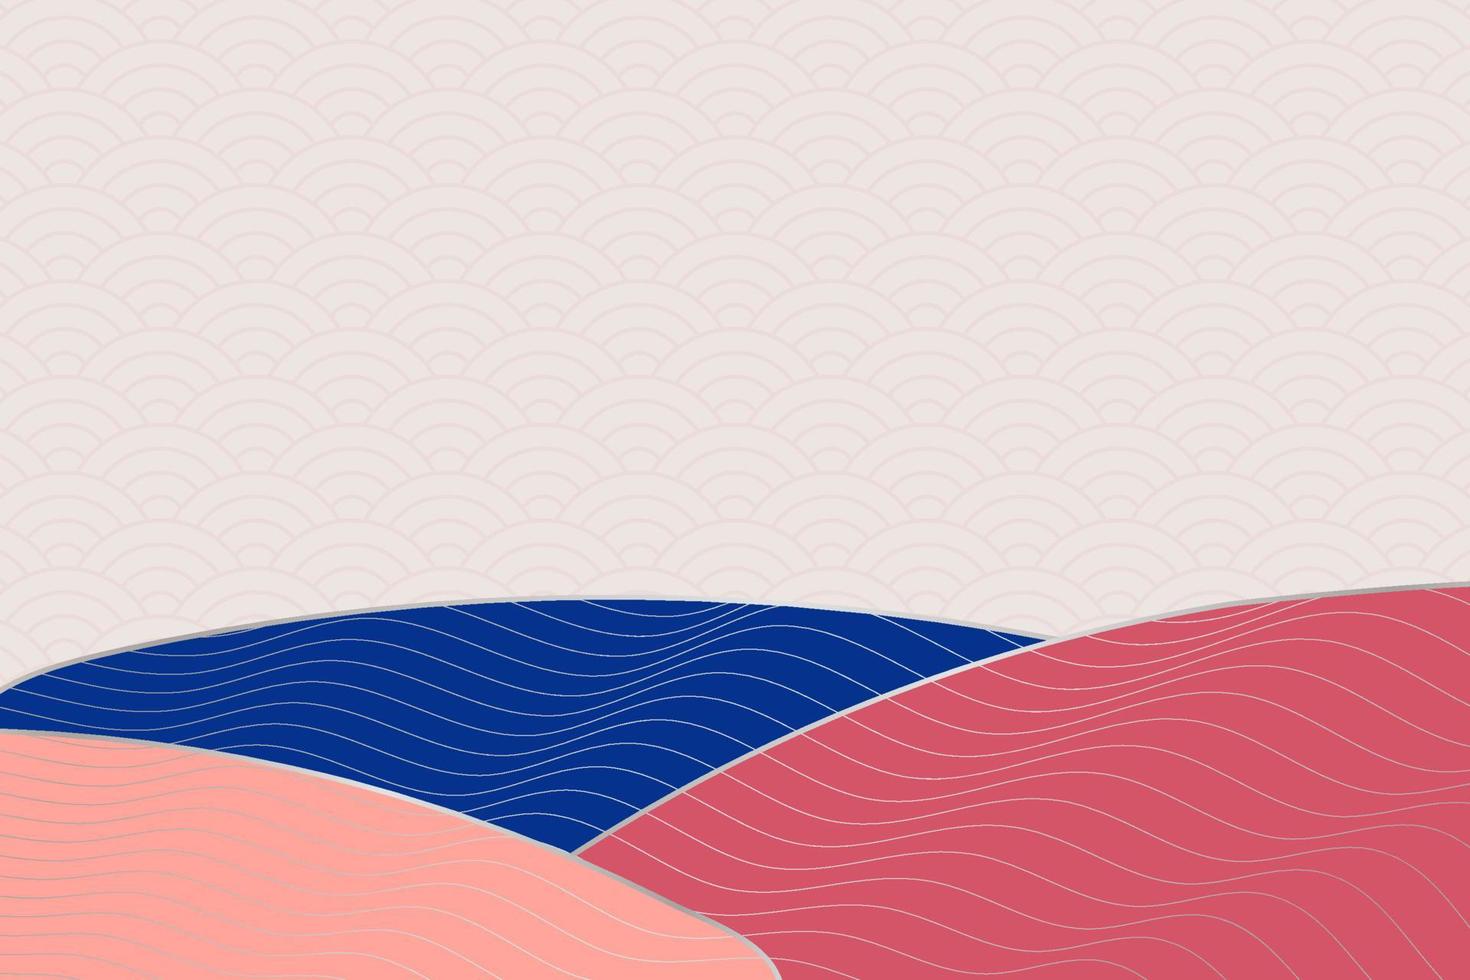 abstracte golfstijlachtergrond met geometrisch Japans patroon en golvende gestreepte lijnen vector